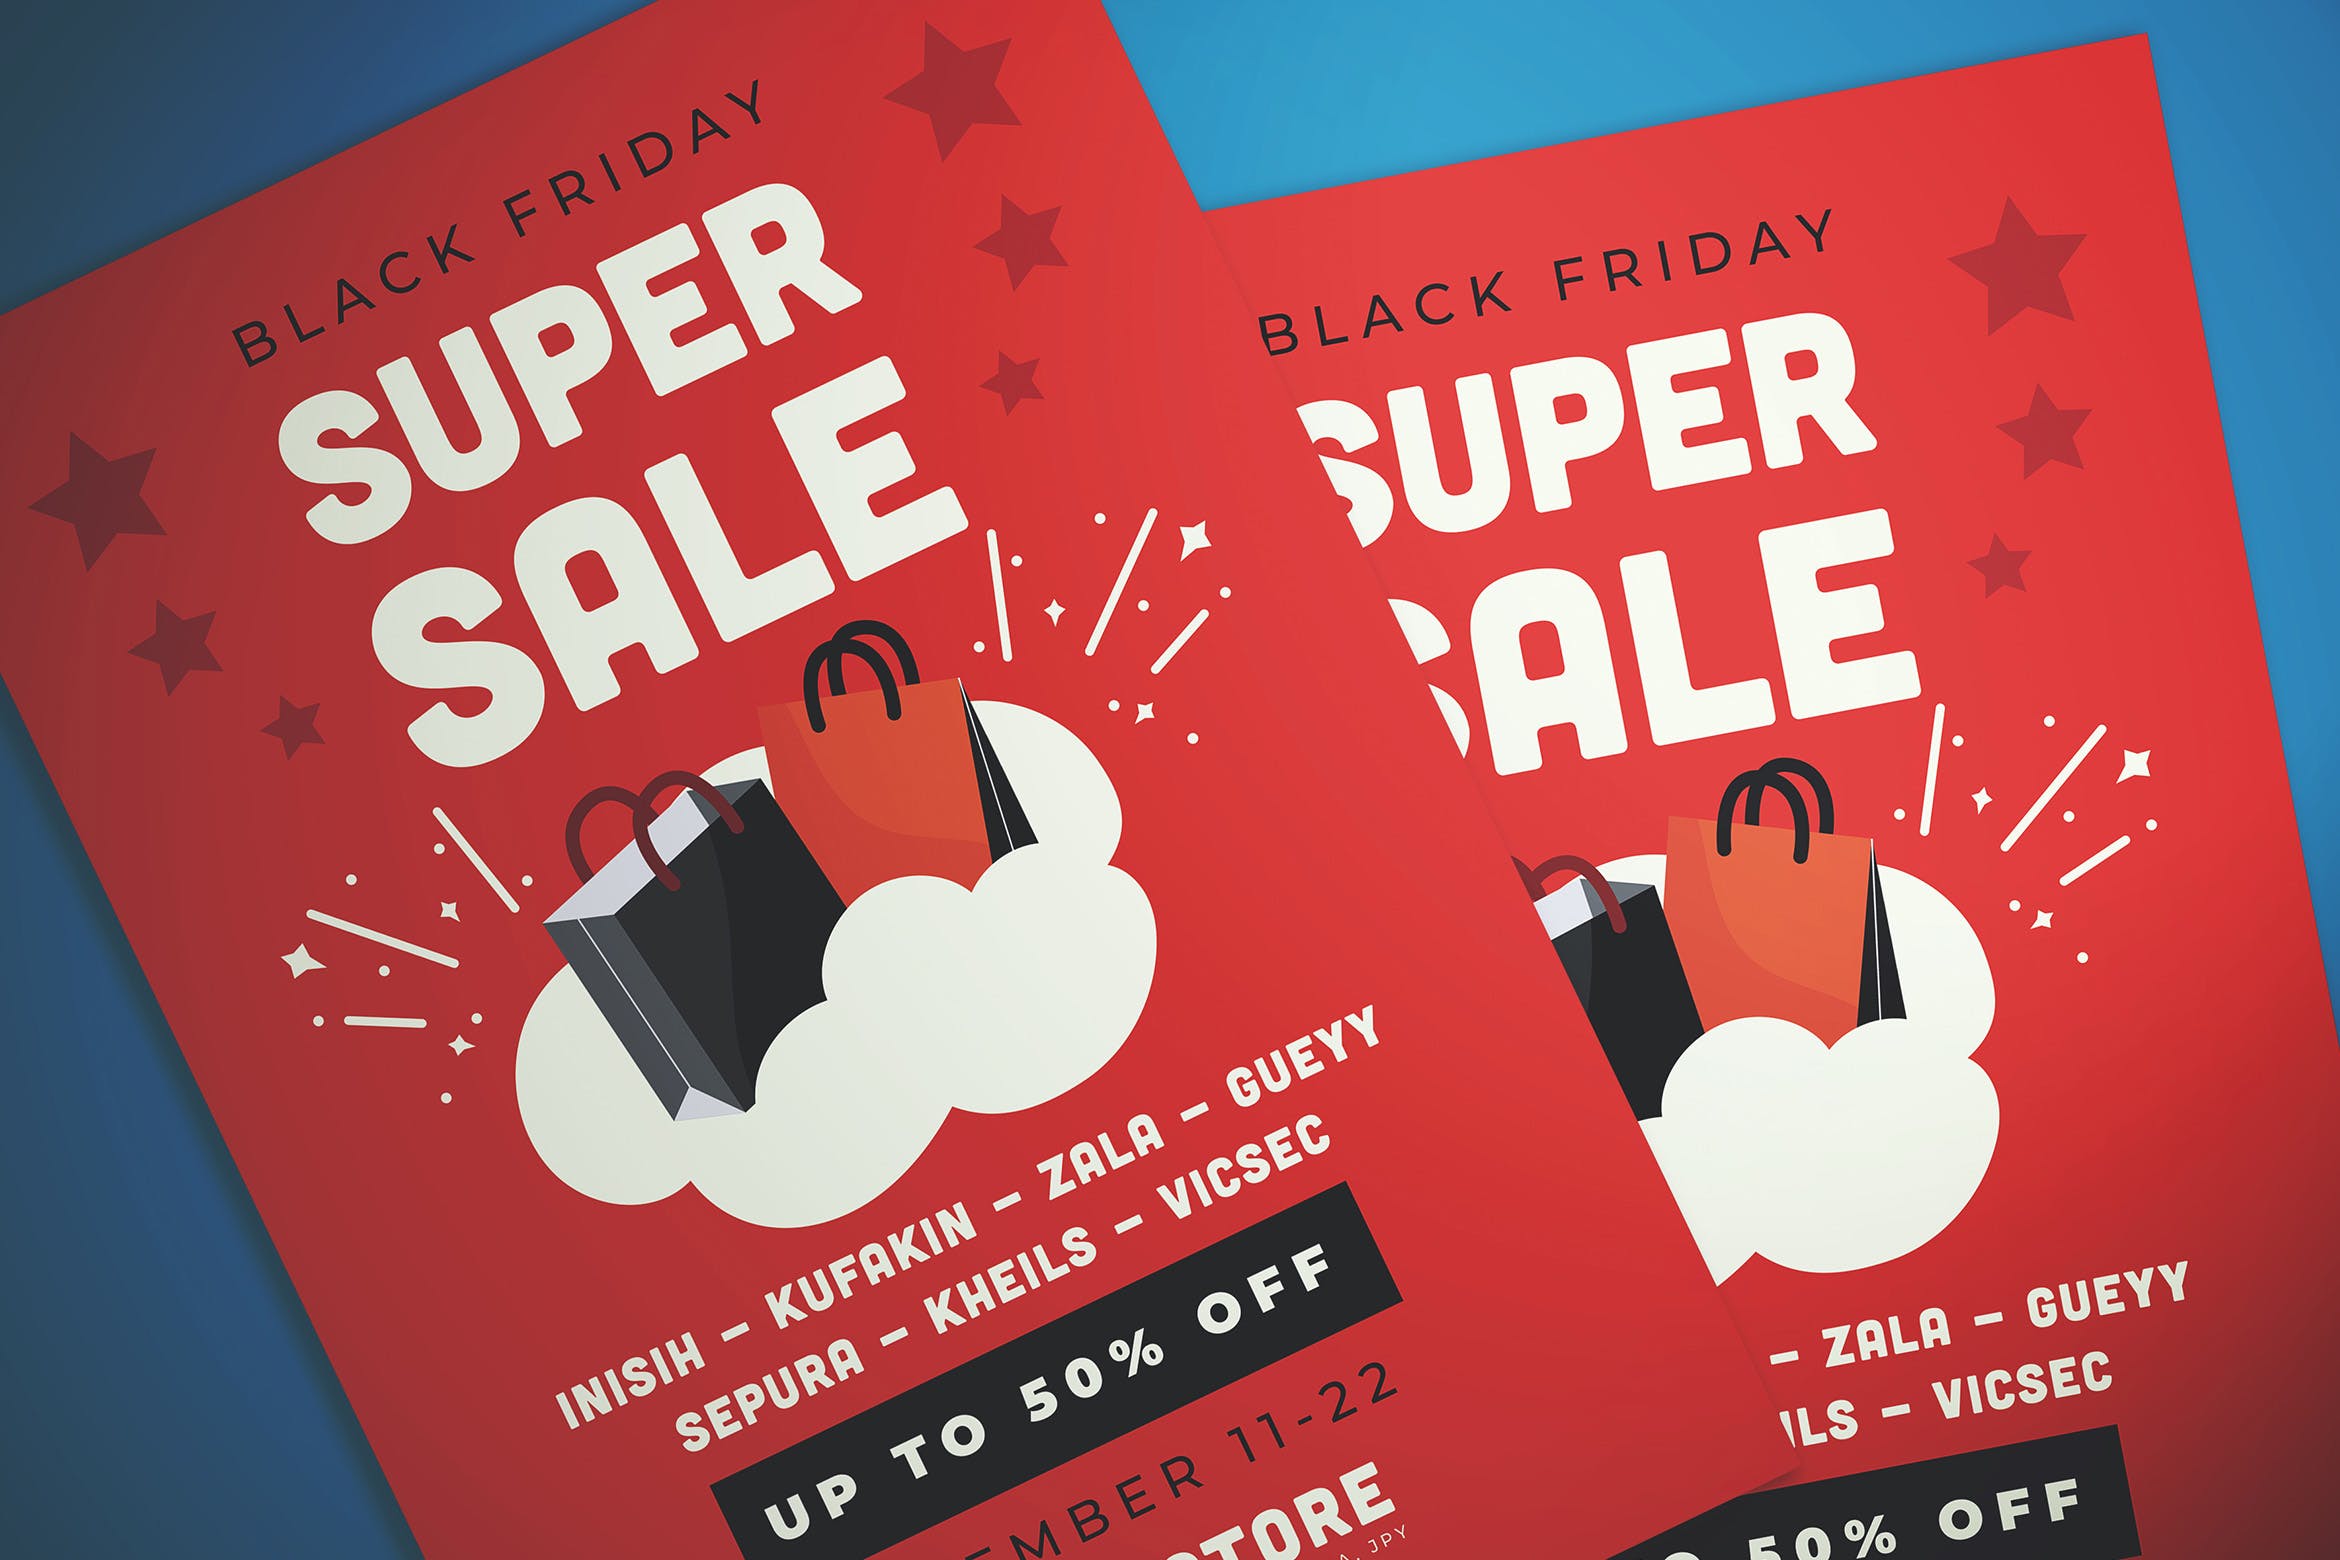 黑色星期五超级优惠活动海报传单设计模板 Black Friday Super Sale Flyer插图